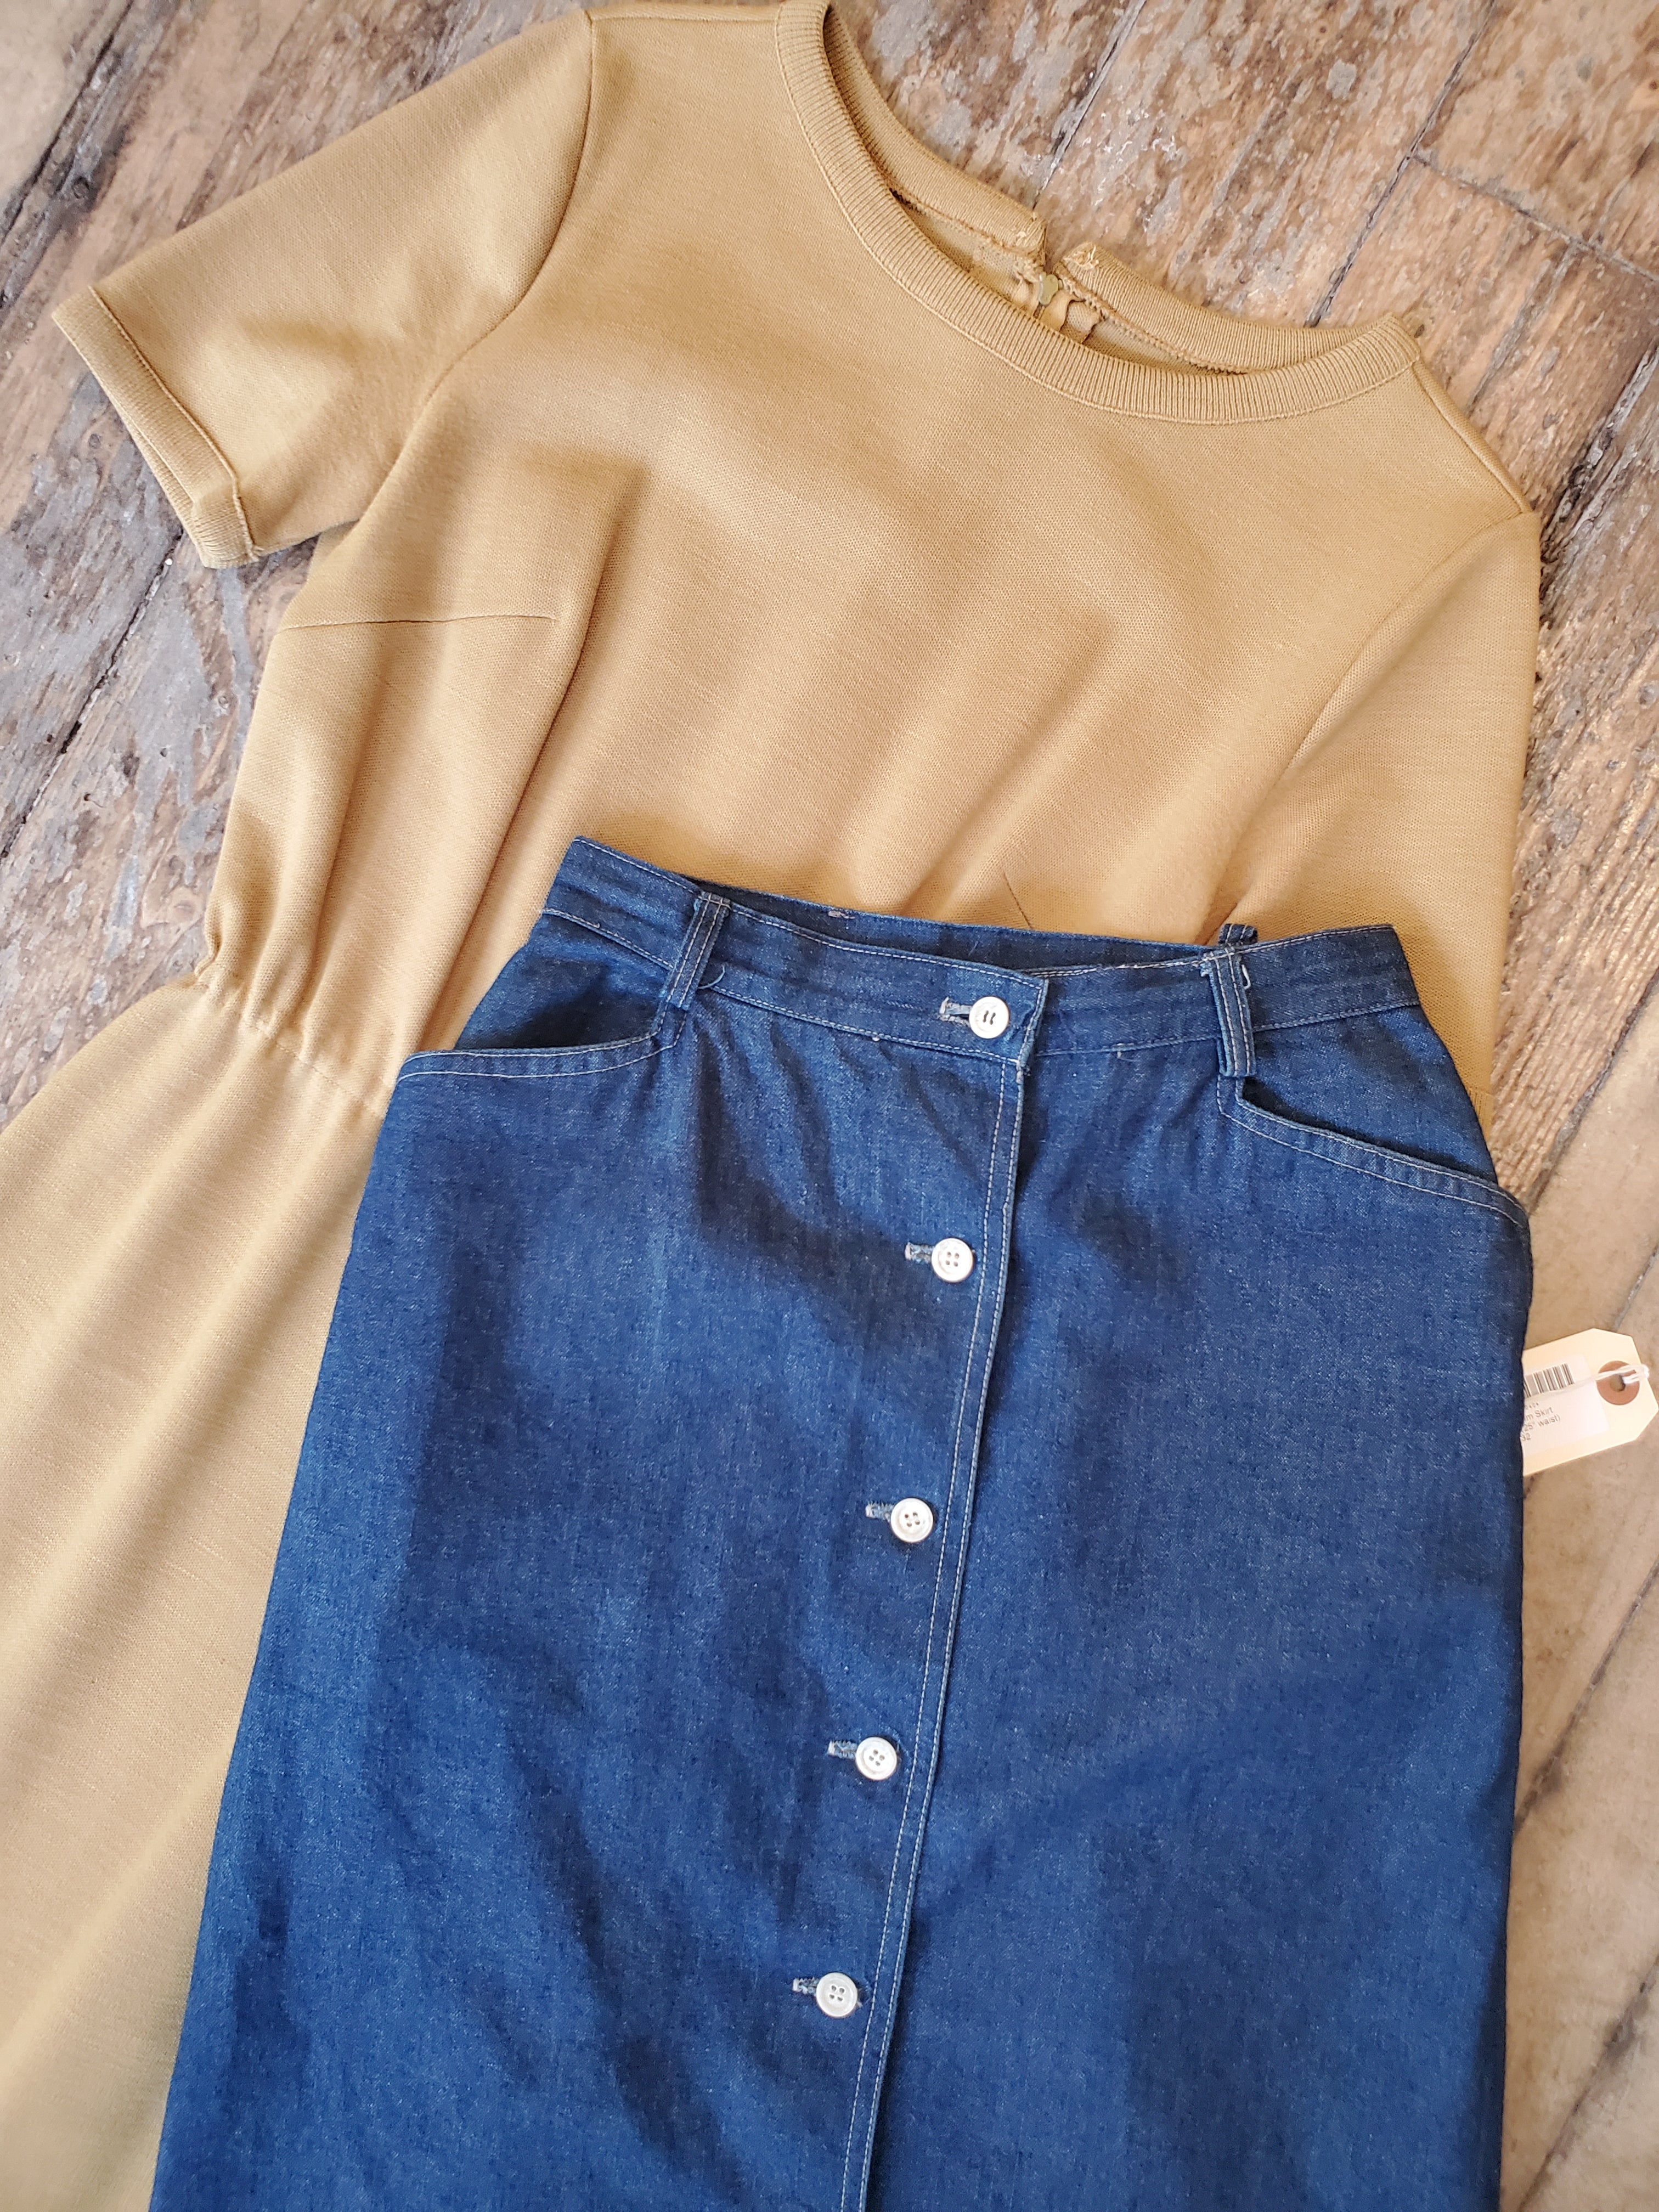 1970’s Denim Skirt